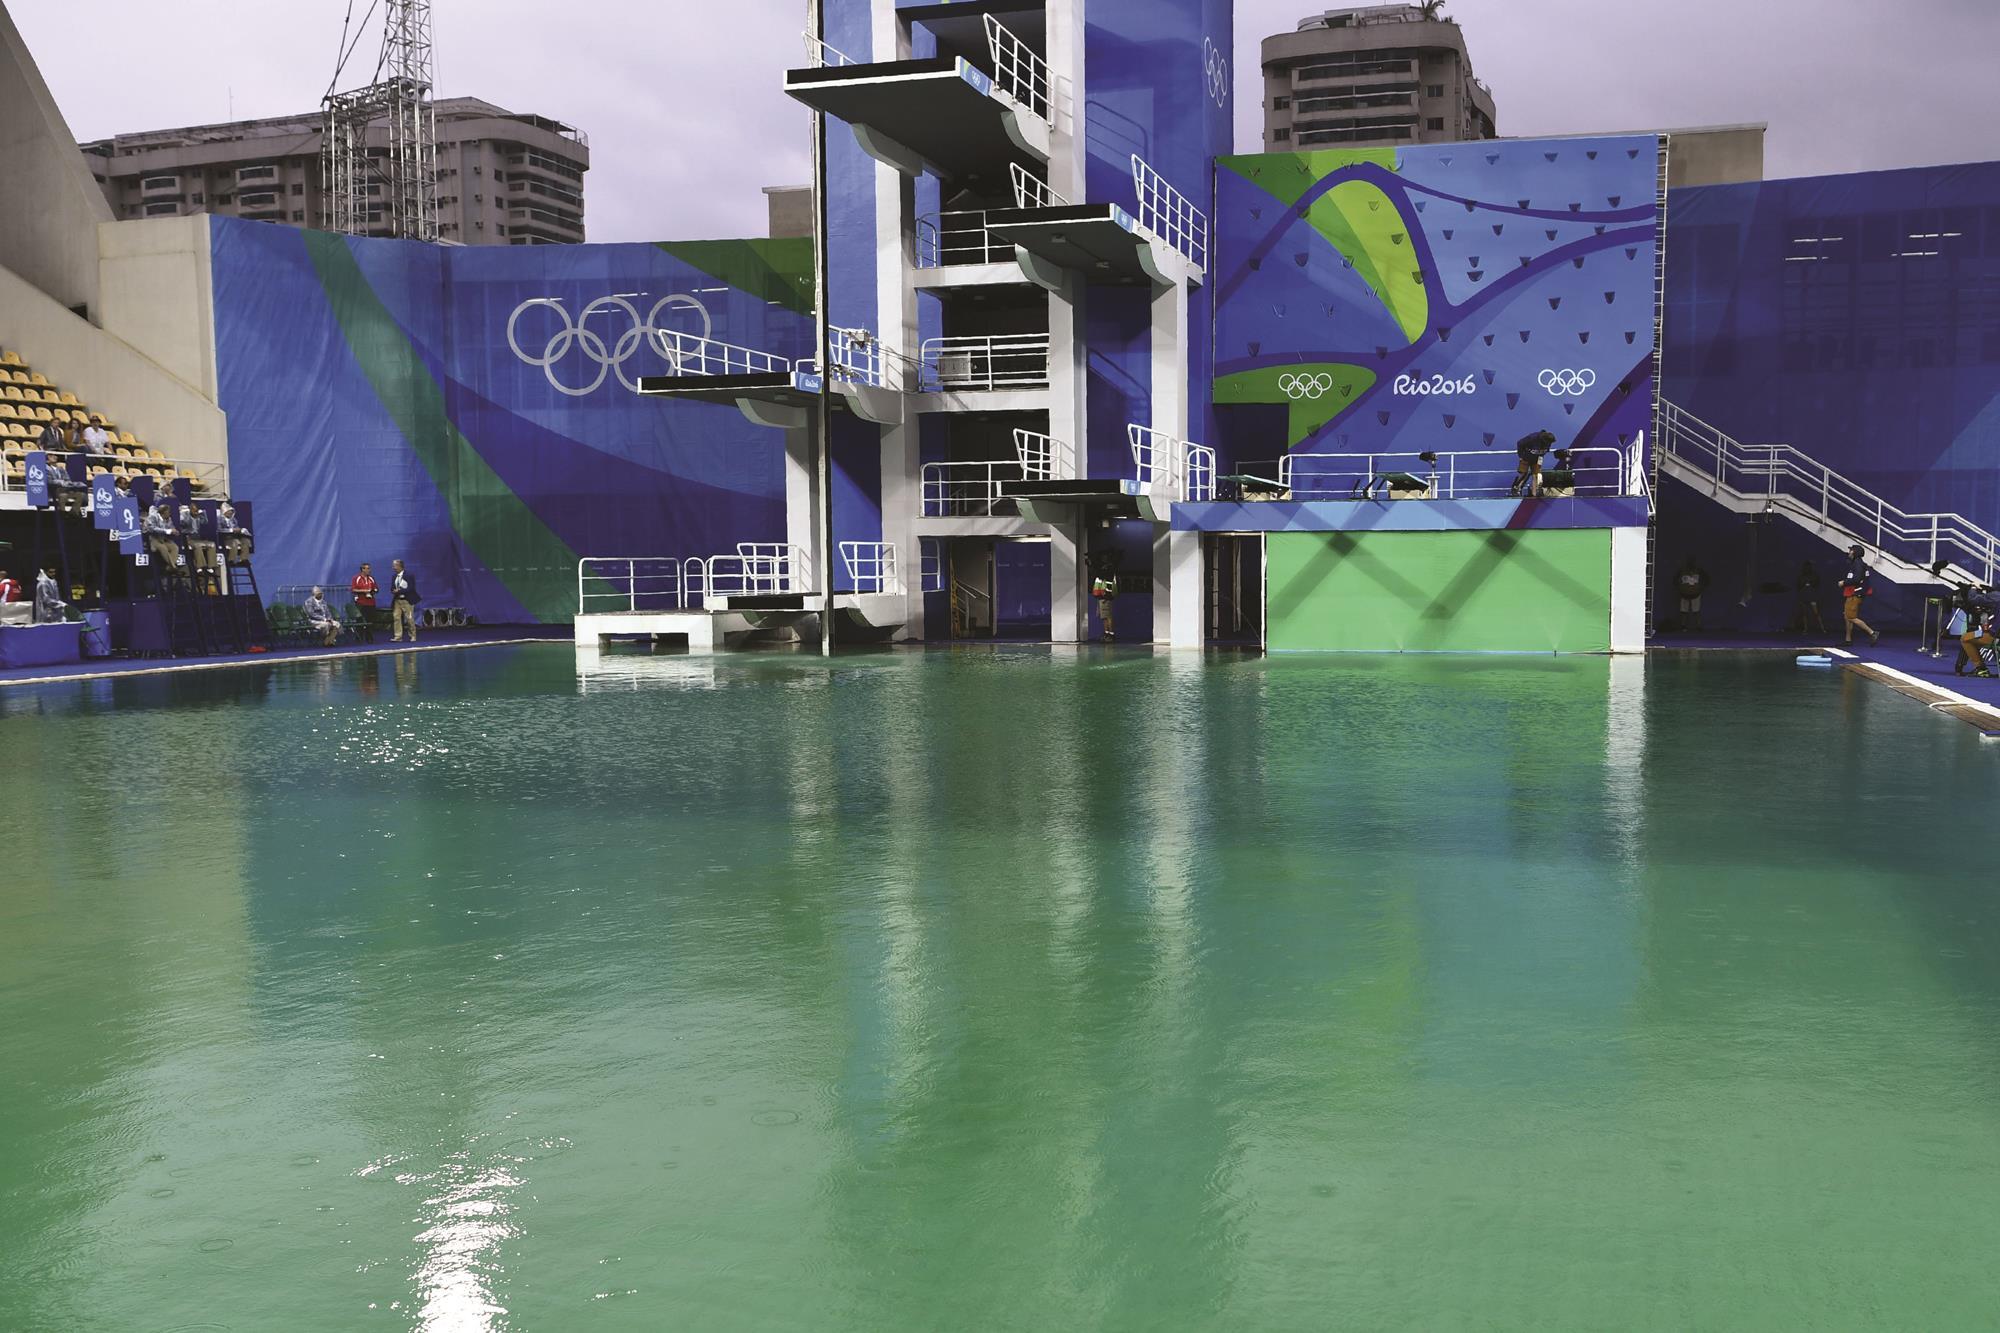 Algae Confirmed As Culprit In Rio Green Pool Saga News Chemistry World